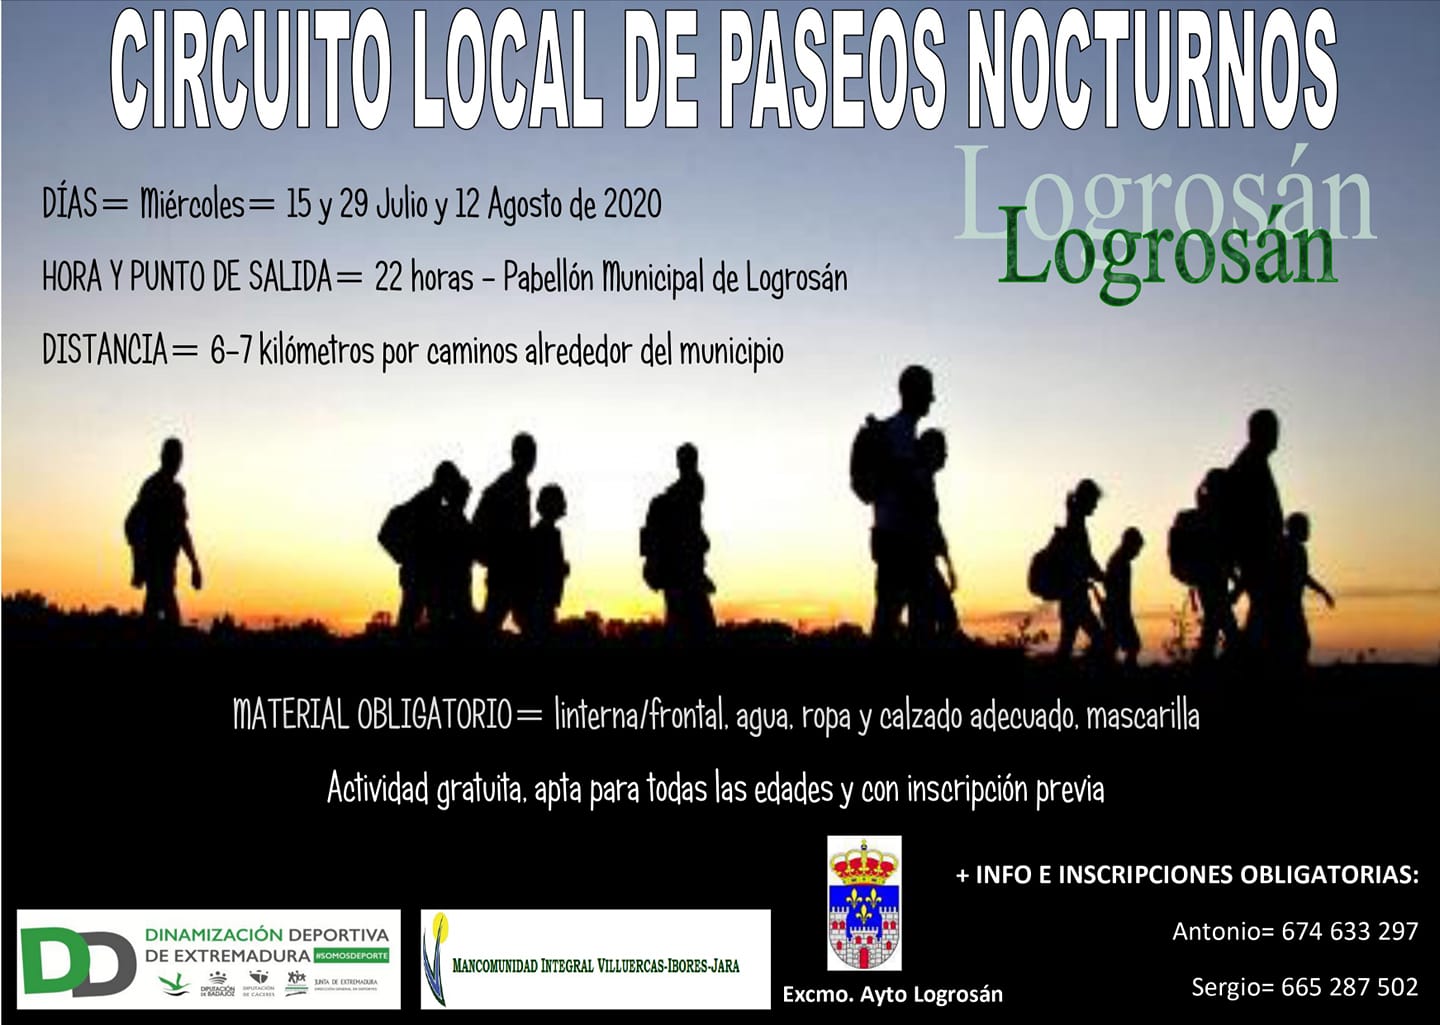 Circuito local de paseos nocturnos 2020 - Logrosán (Cáceres)